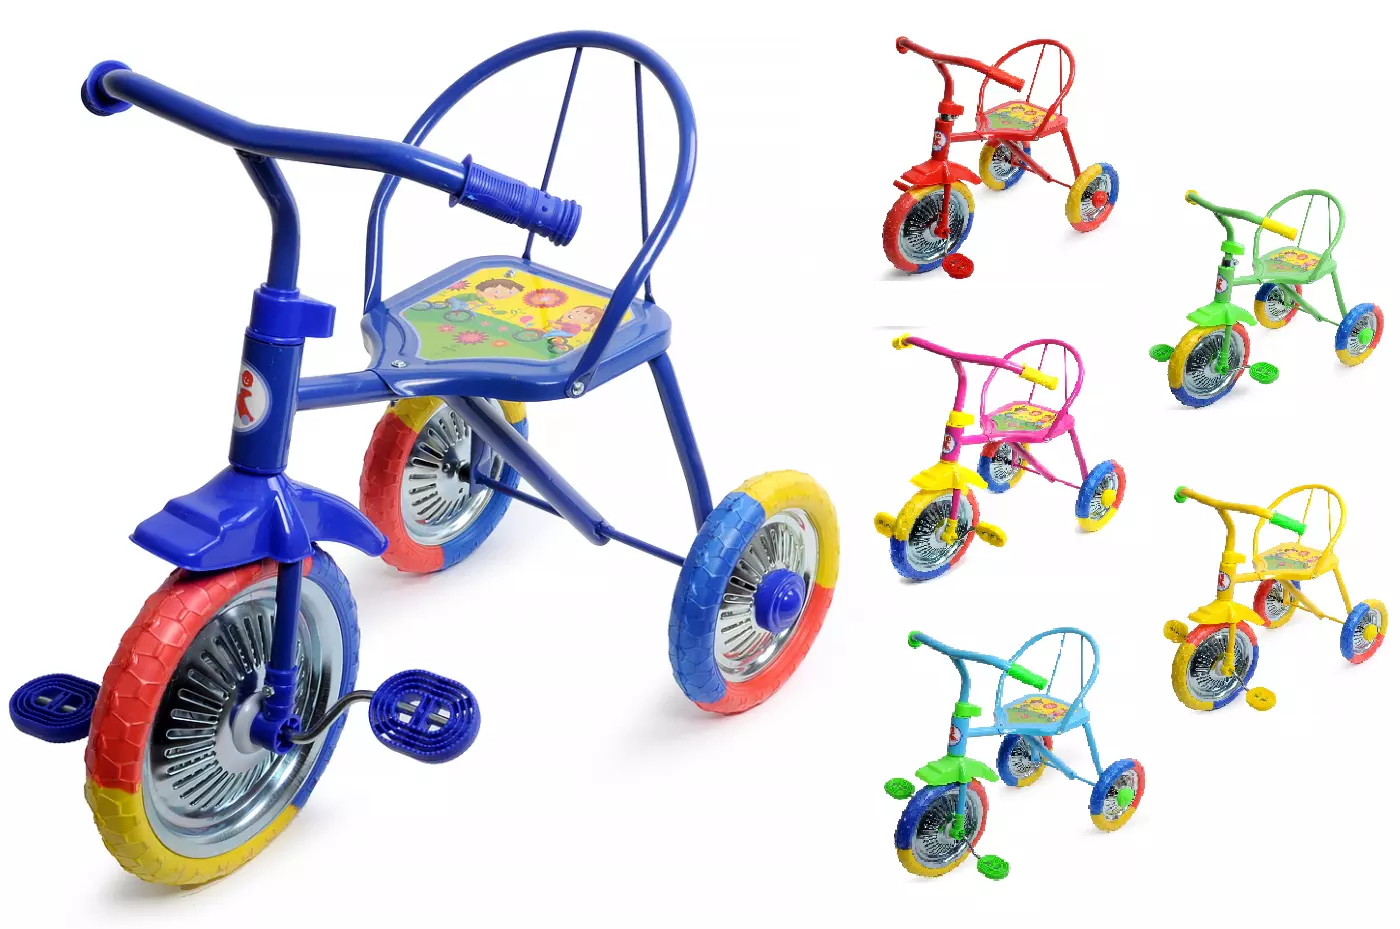 Велосипед для детей от года лучшие. Велосипед трехколесный lh702. Велосипед 3-х озорной ветерок GV-b3-2mx цвета микс. Трехколесный велосипед PN-1010, Panterra, "гвоздик". Велосипед трёхколёсный детский lh702.